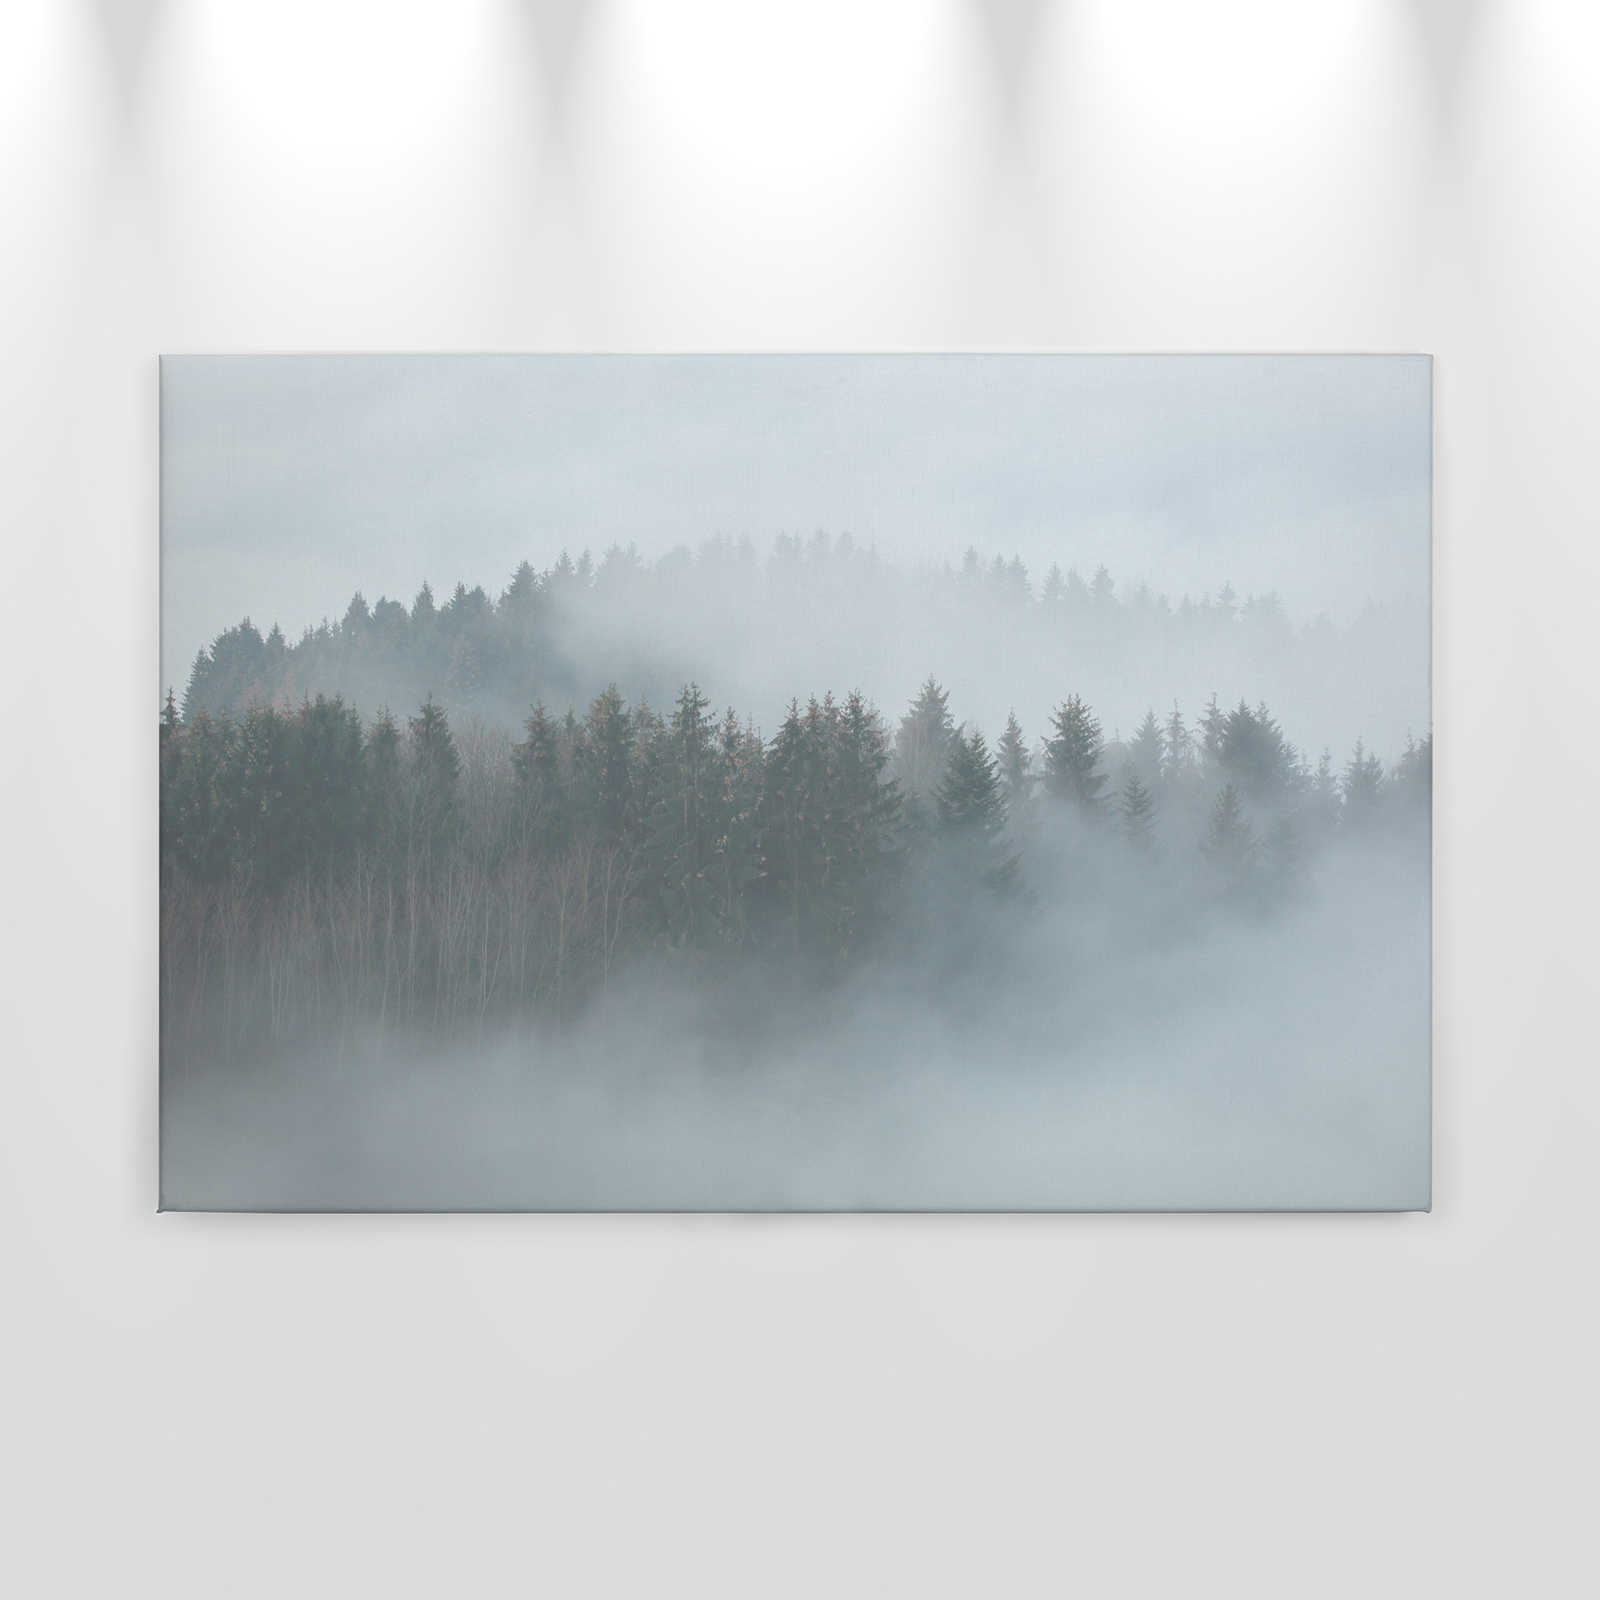             Leinwand mit geheimnisvollem Wald im Nebel – 0,90 m x 0,60 m
        